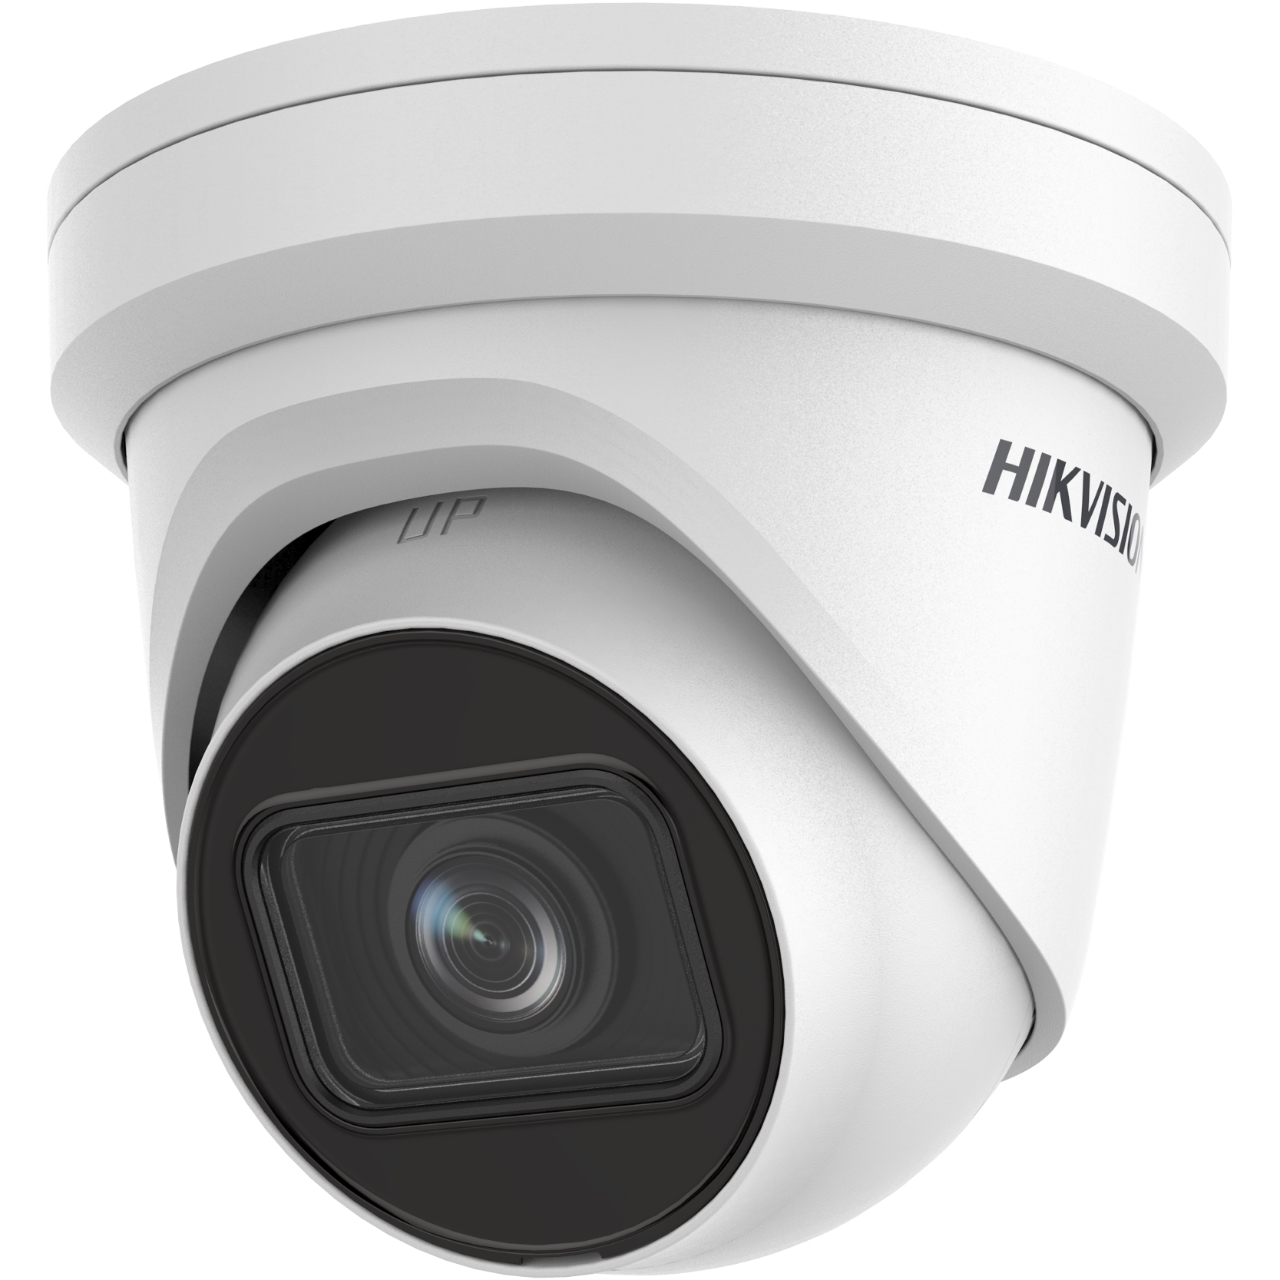 20000586 Hikvision AcuSense EasyIP 2.0+ Gen2 2MP EXIR Turret IP camera, 2.8-12mm